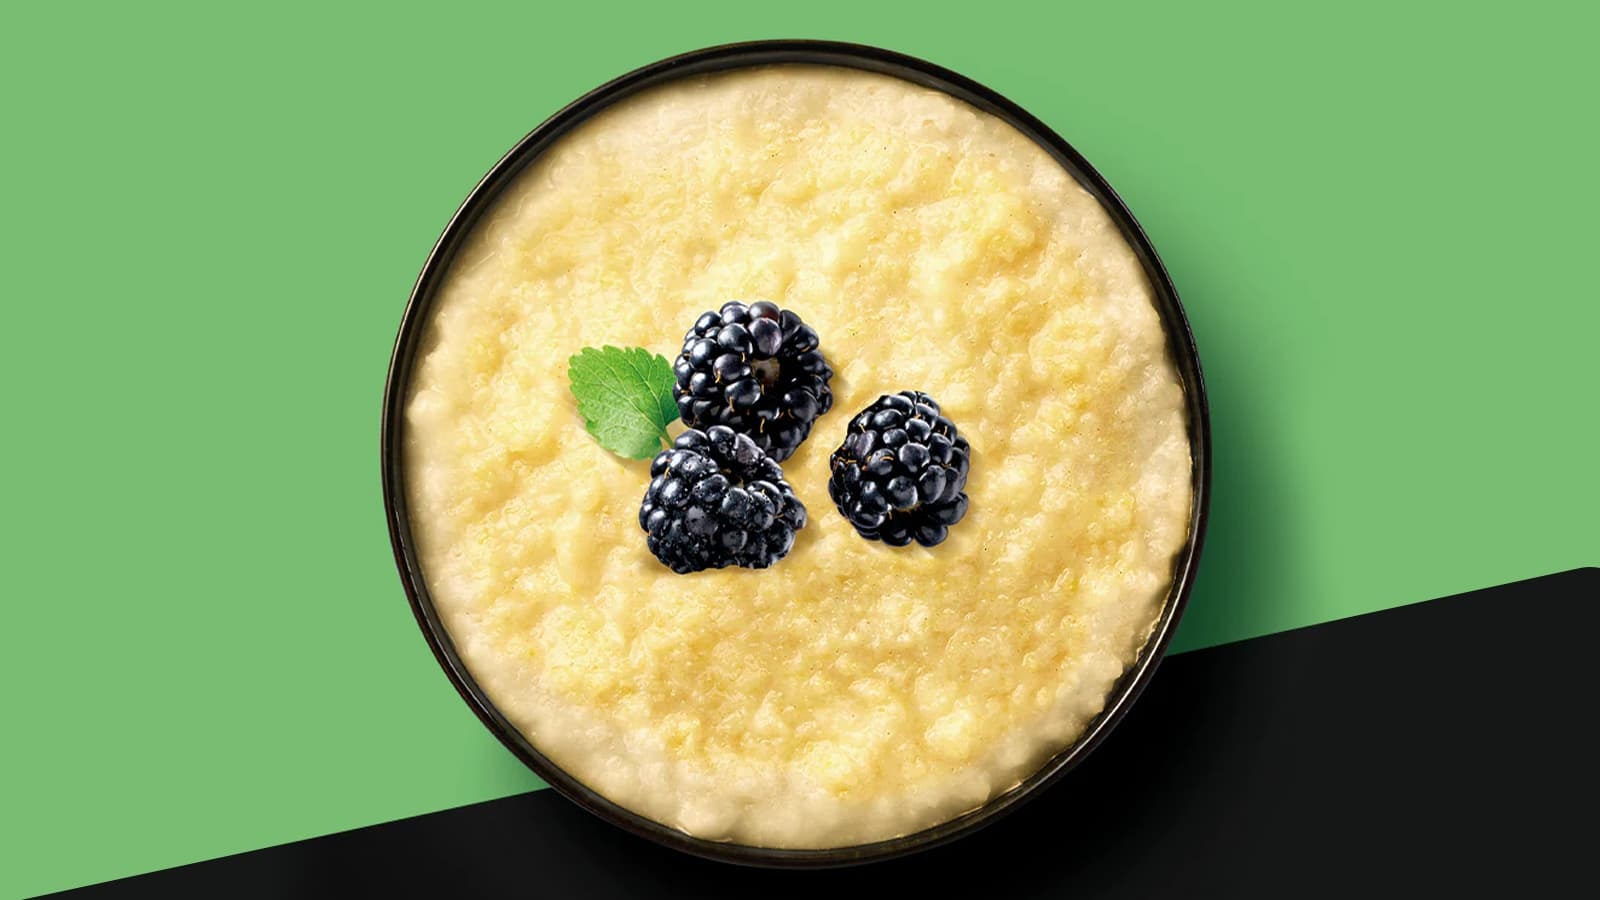 ESN Designer Maize Pudding Produkt Review. Bild mit einer Schüssel, in der sich der ESN Designer Maize Pudding befindet, garniert mit Beeren.